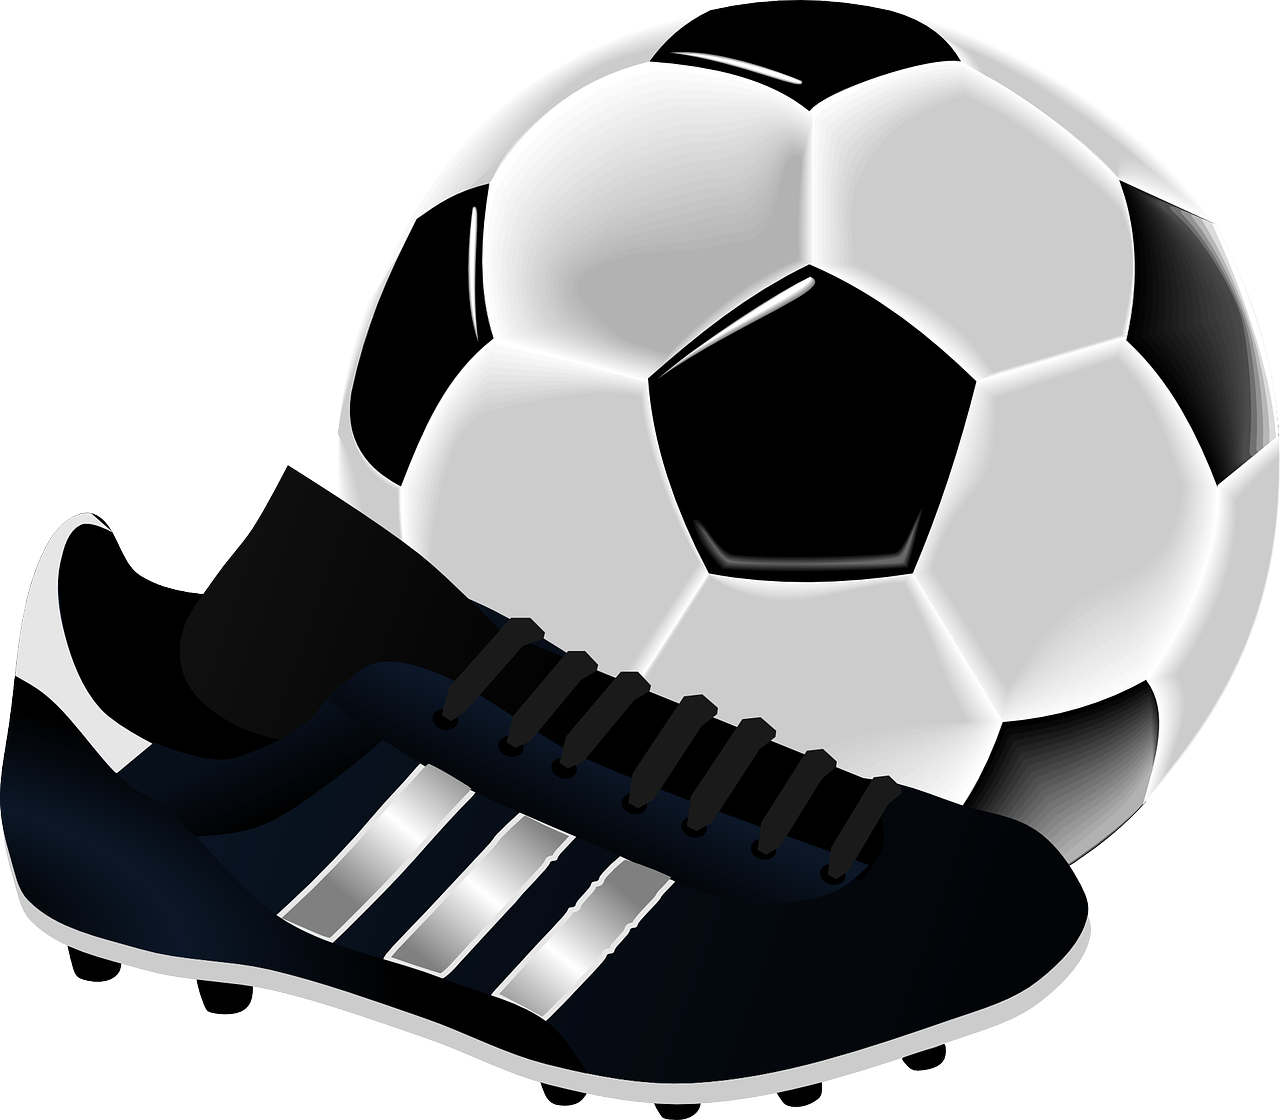 Das Bild zeigt einen Fußball und Fußballschuhe.